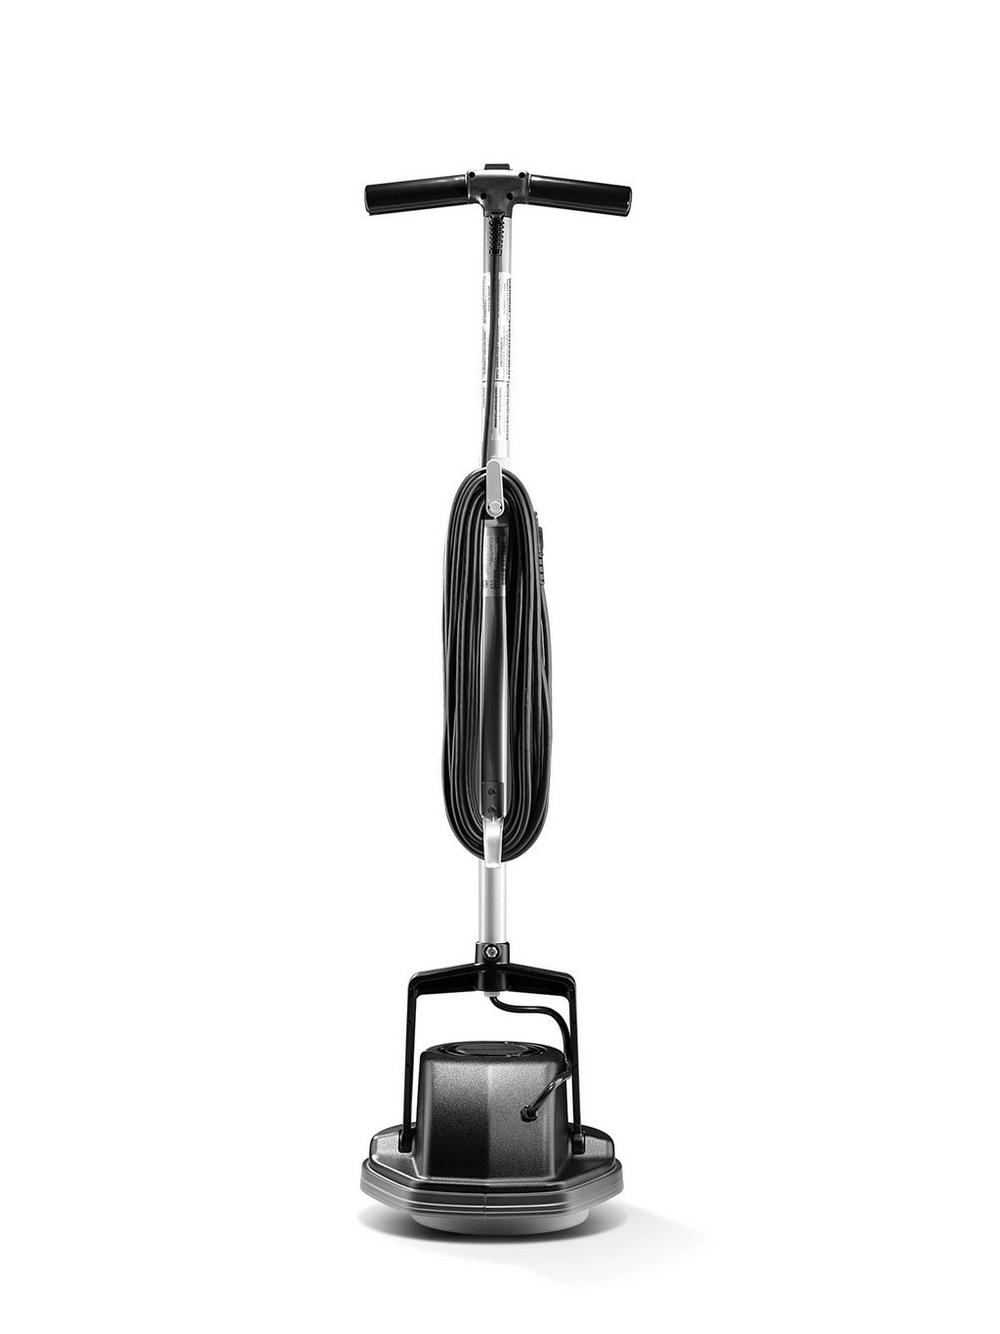 Oreck Orbiter Ultra Multi-Purpose Floor Cleaning Machine - Black